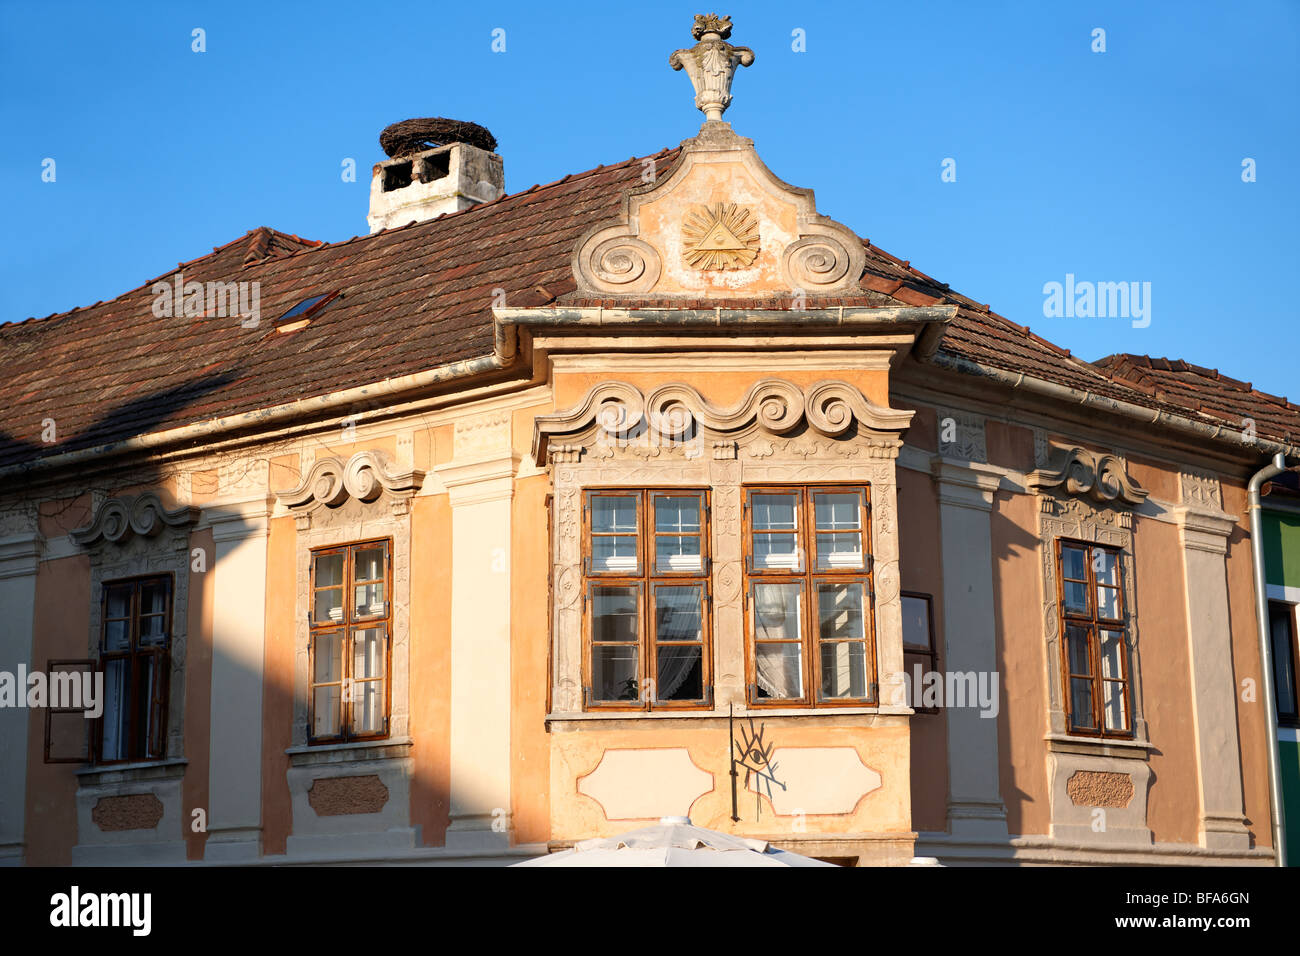 Bâtiments sur la place principale, la rouille ( hongrois : Ruszt ) sur le lac, Burgenland, Autriche Banque D'Images